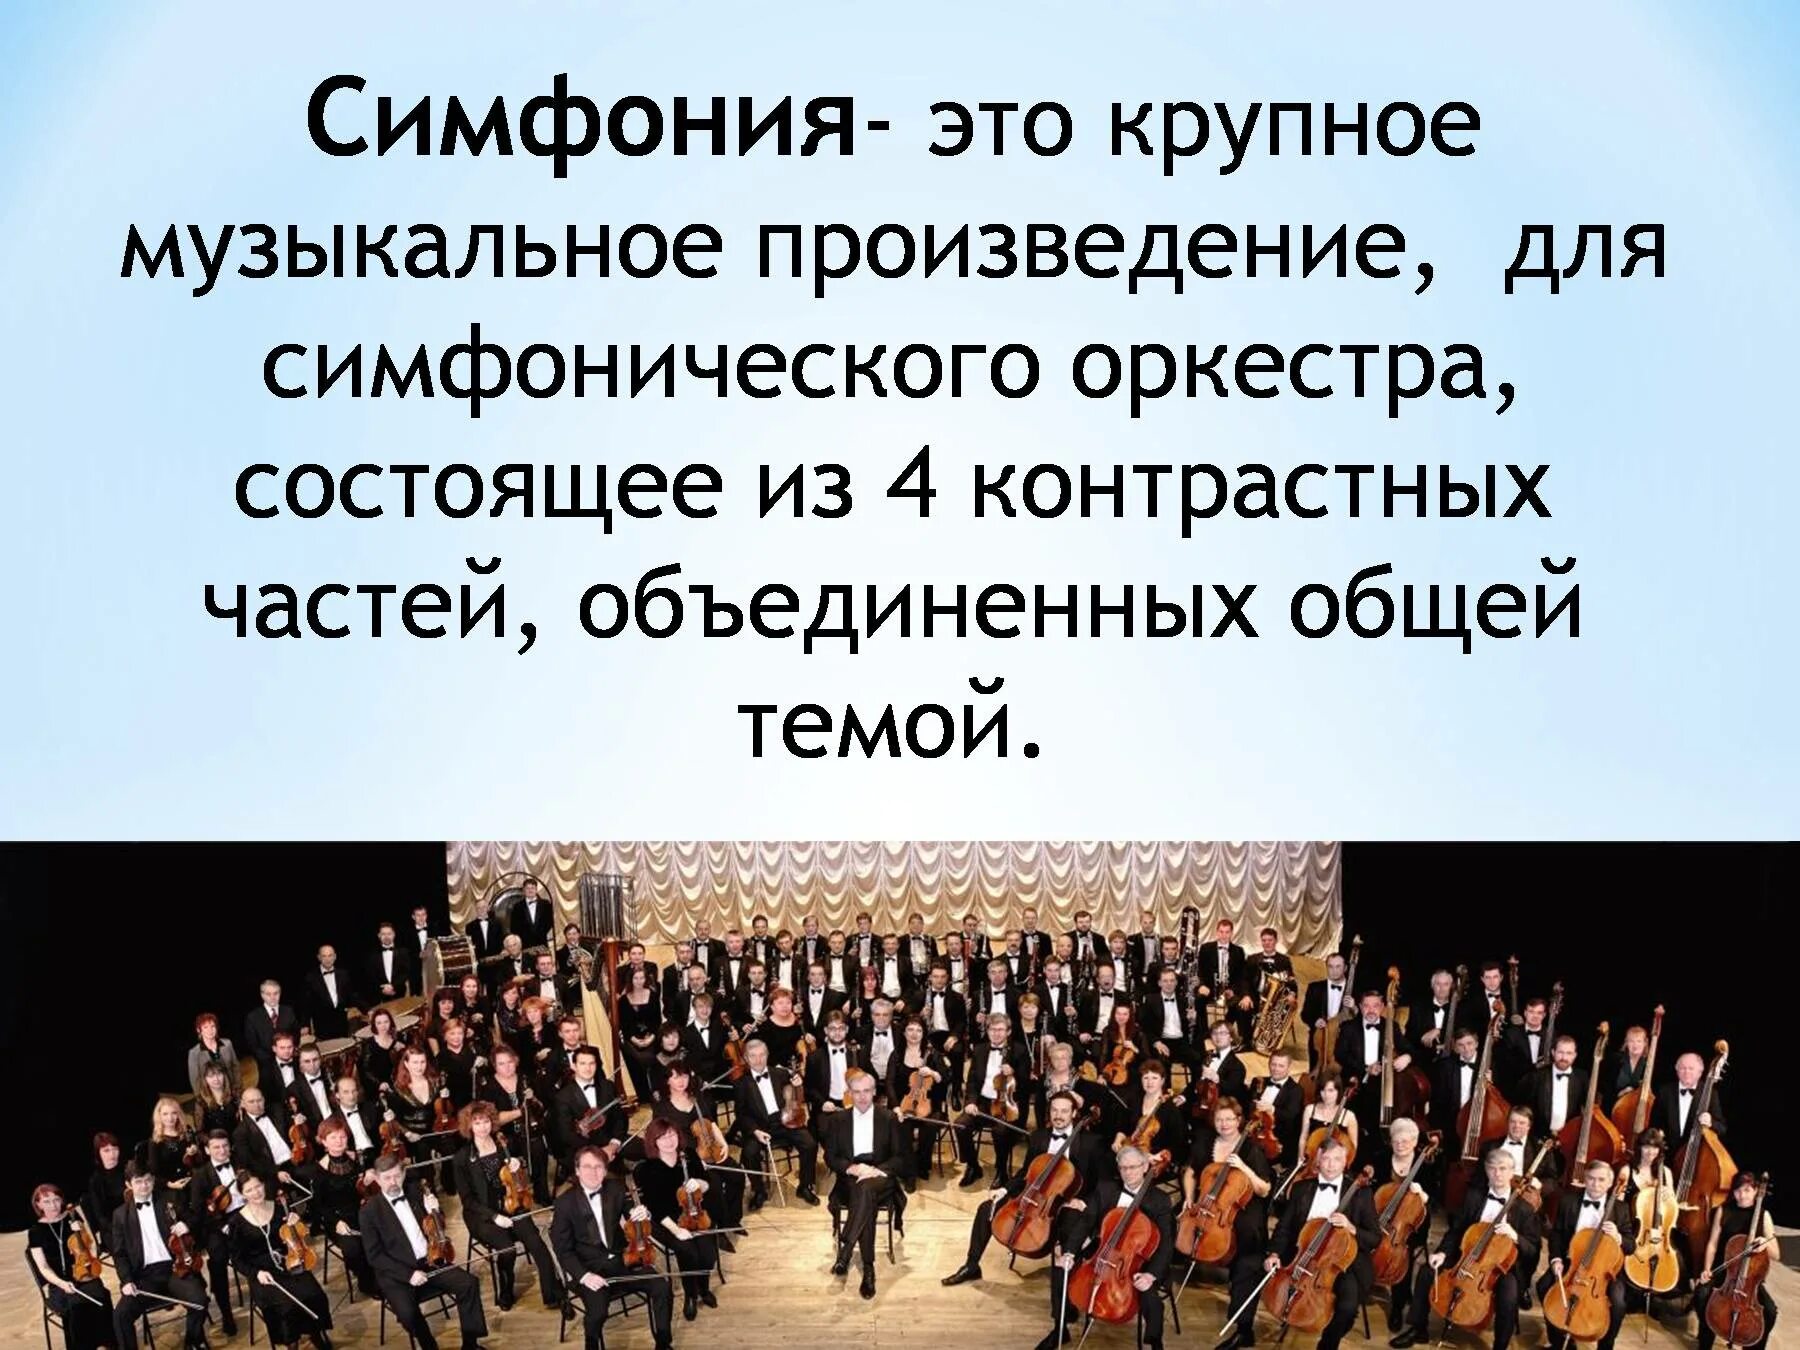 Определите музыкальные произведения. Симфония. Произведения для симфонического оркестра. Симфония-это музыкальное произведение. Музыкальное произведение для симфонического оркестра.